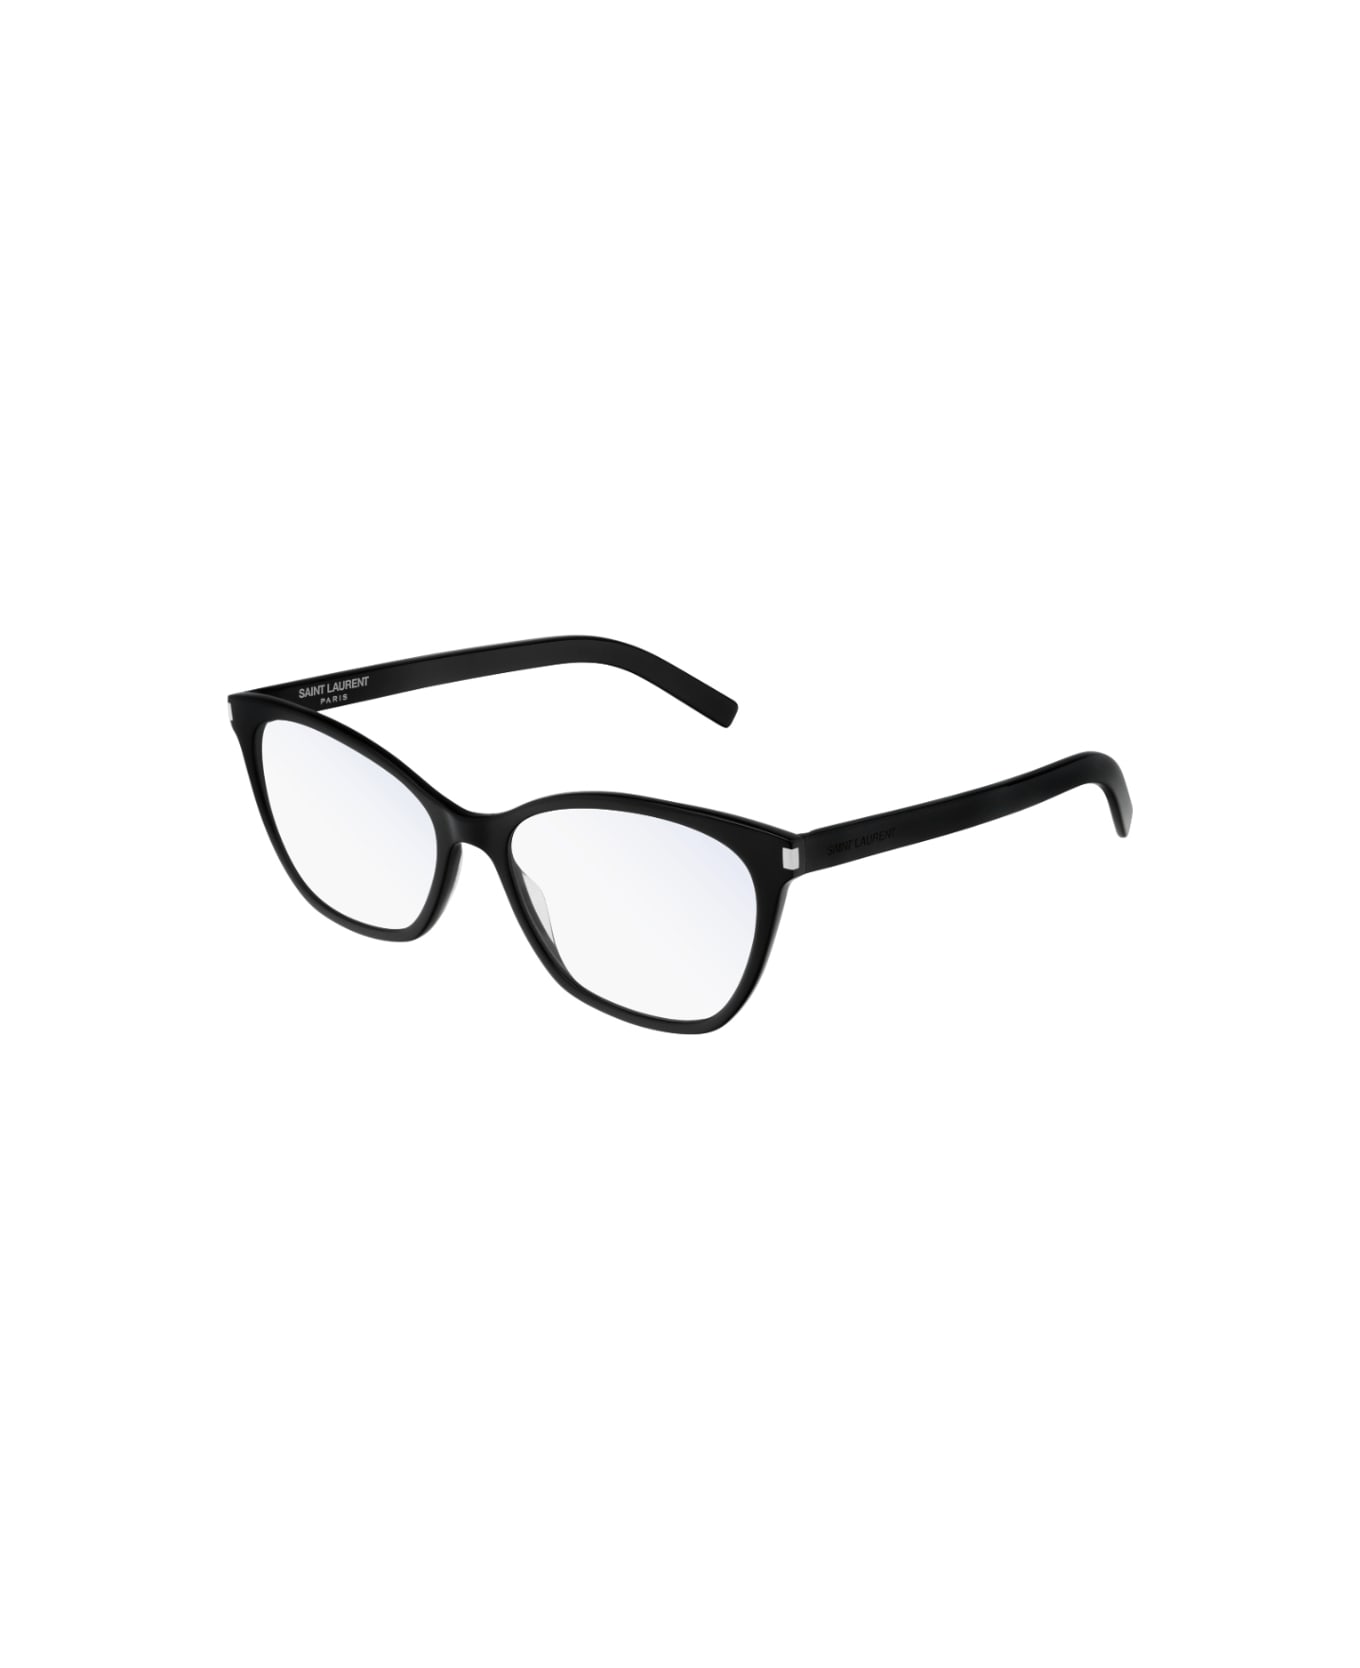 Saint Laurent Eyewear SL 287 001 Glasses アイウェア